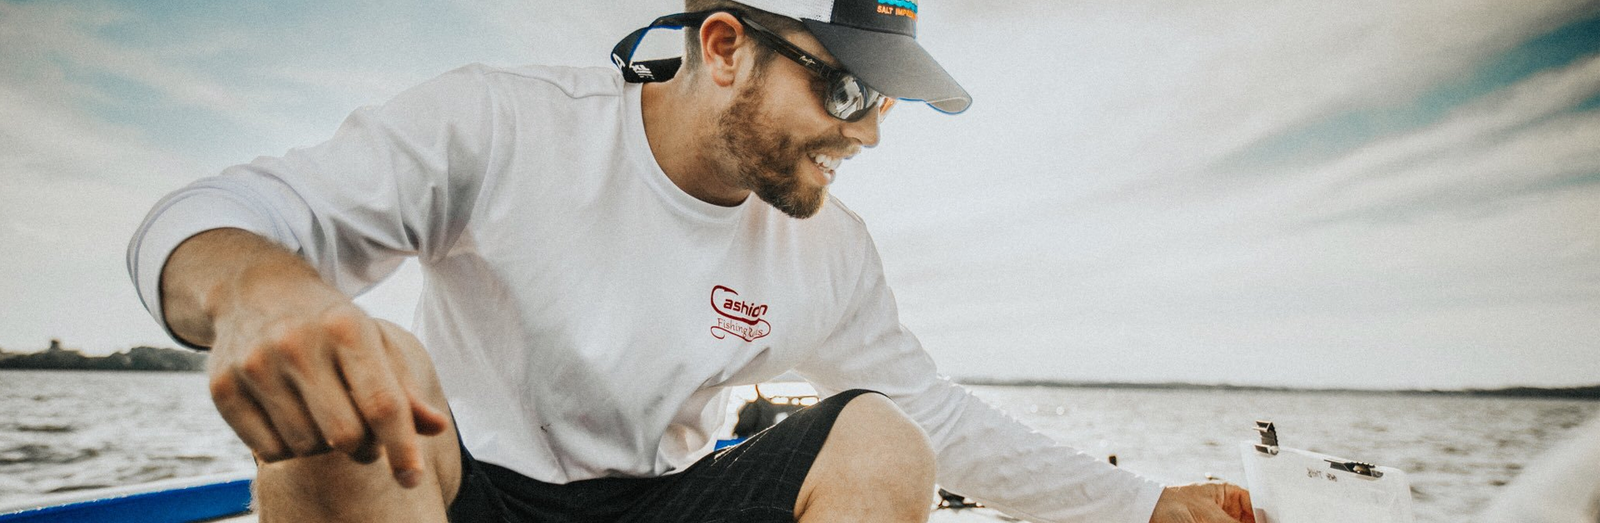 Dustin Lynch On the Lake Fly Fishing - Reel Sportswear